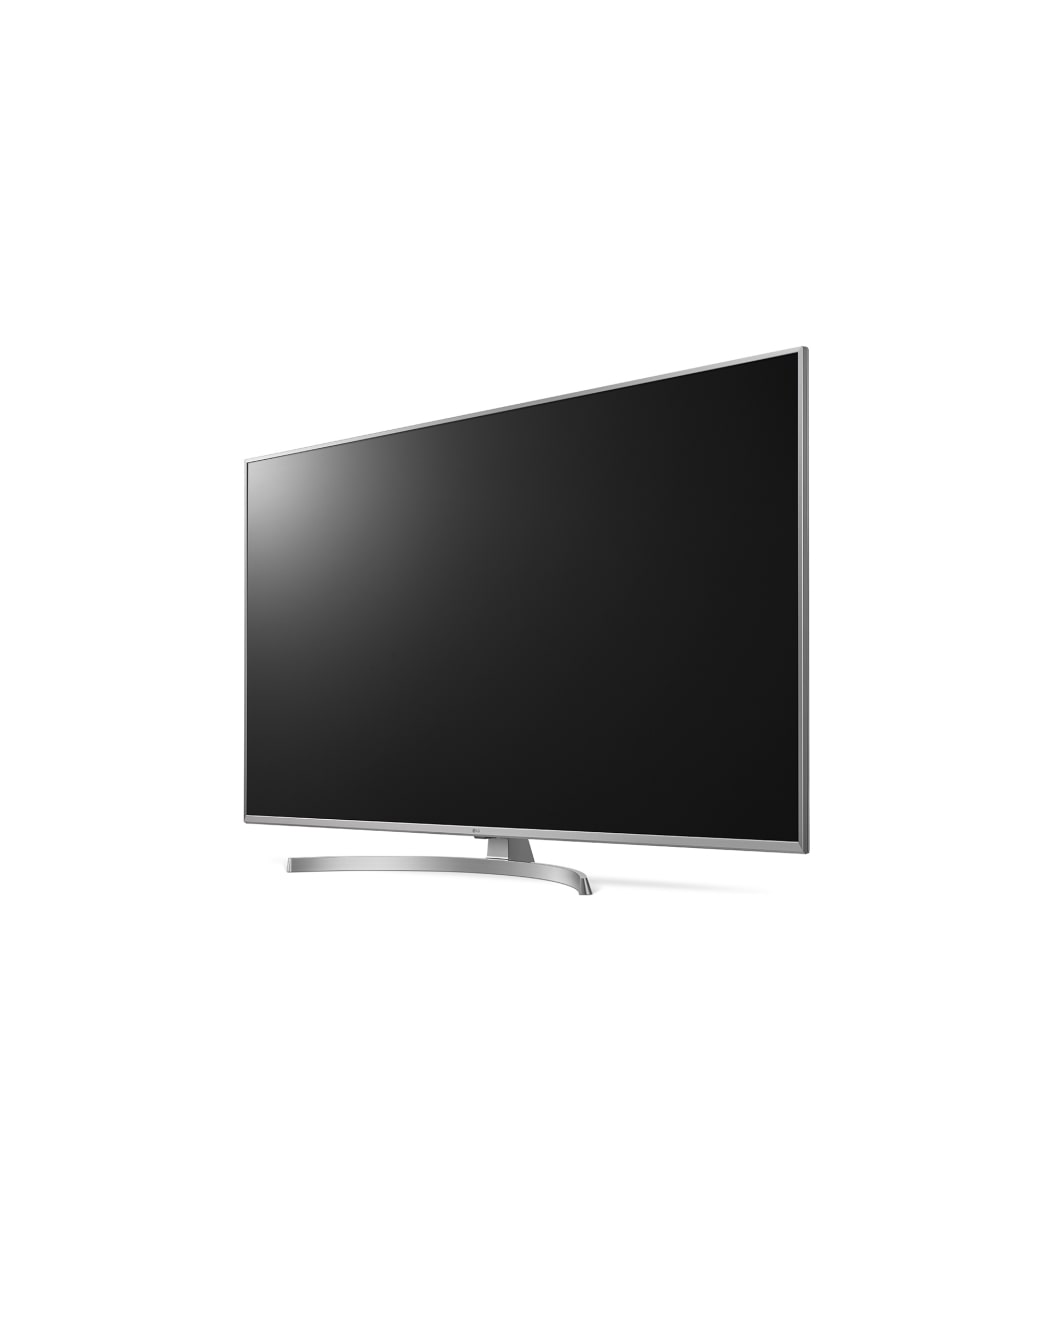 LG Super UHD 4K TV 55 inch | LG New Zealand